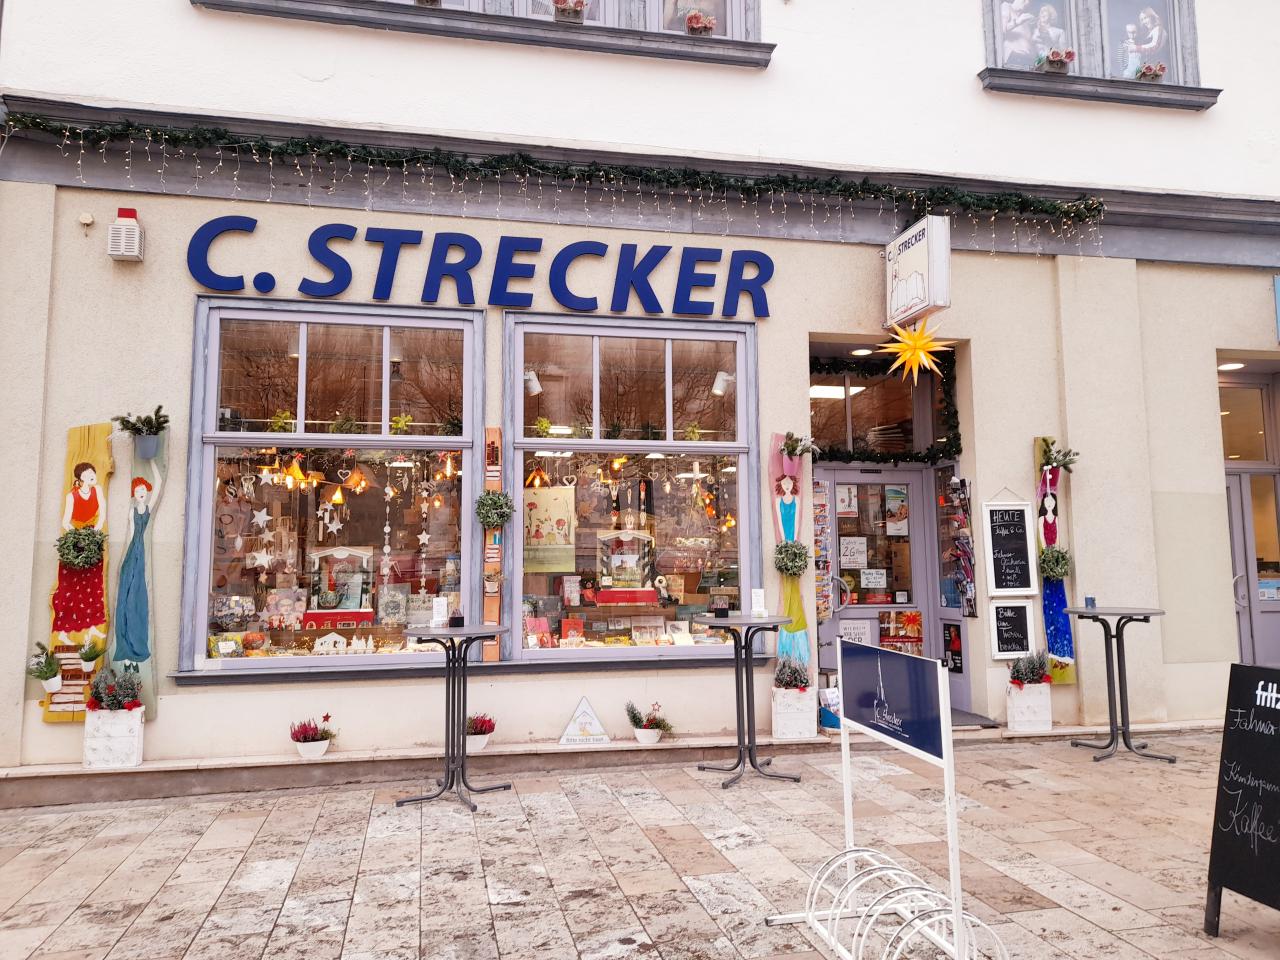 Strecker bookshop with café